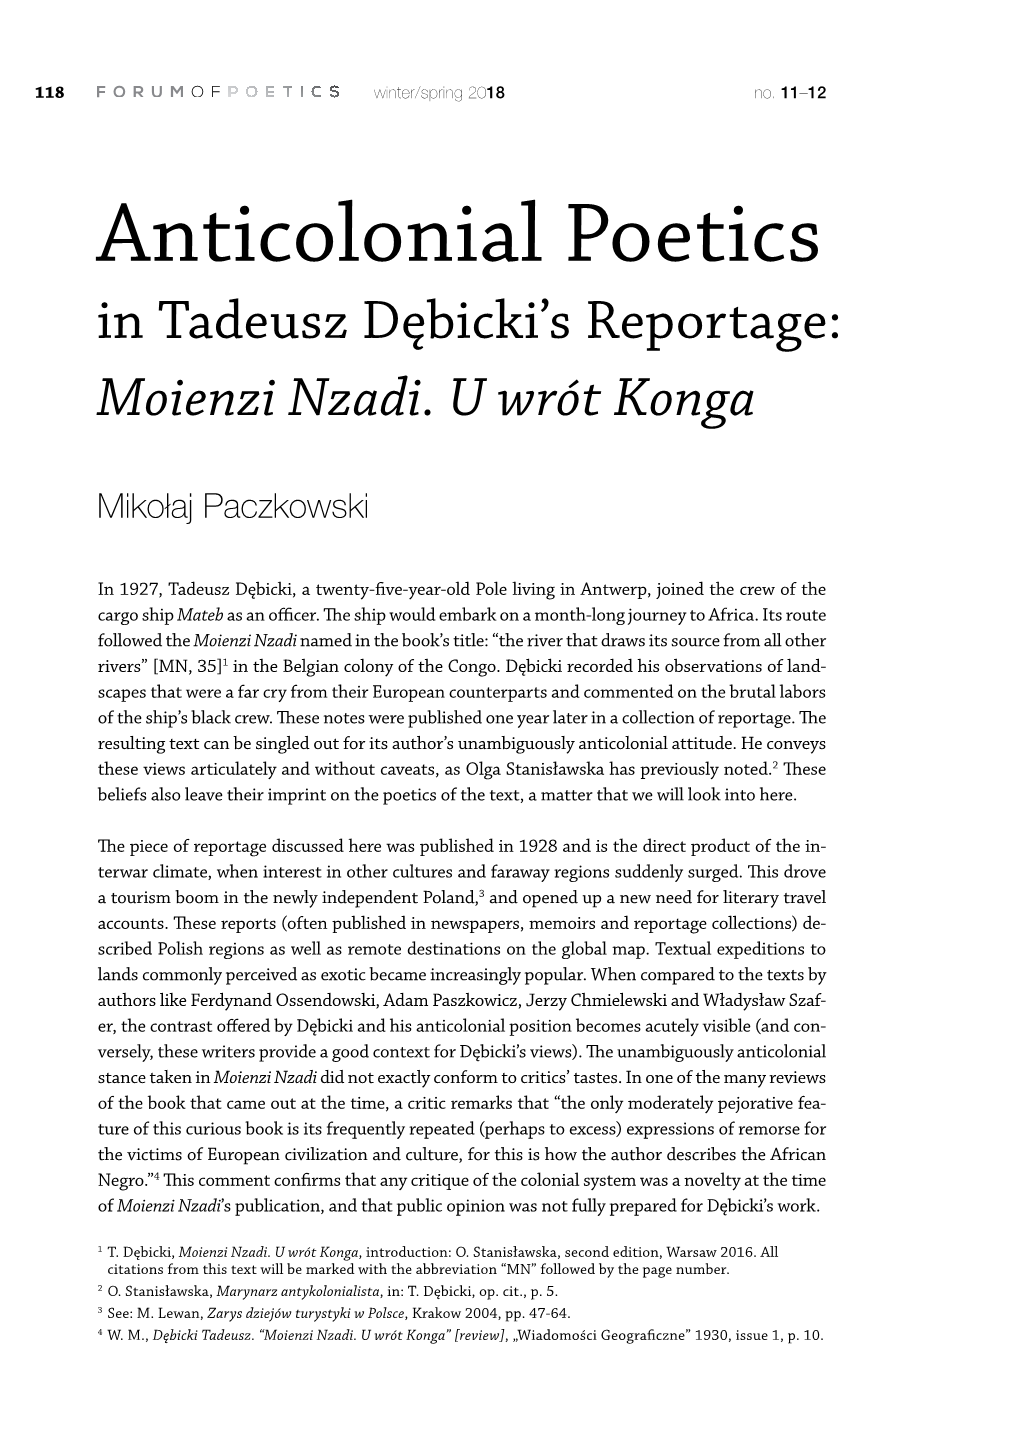 Anticolonial Poetics in Tadeusz Dębicki’S Reportage: Moienzi Nzadi